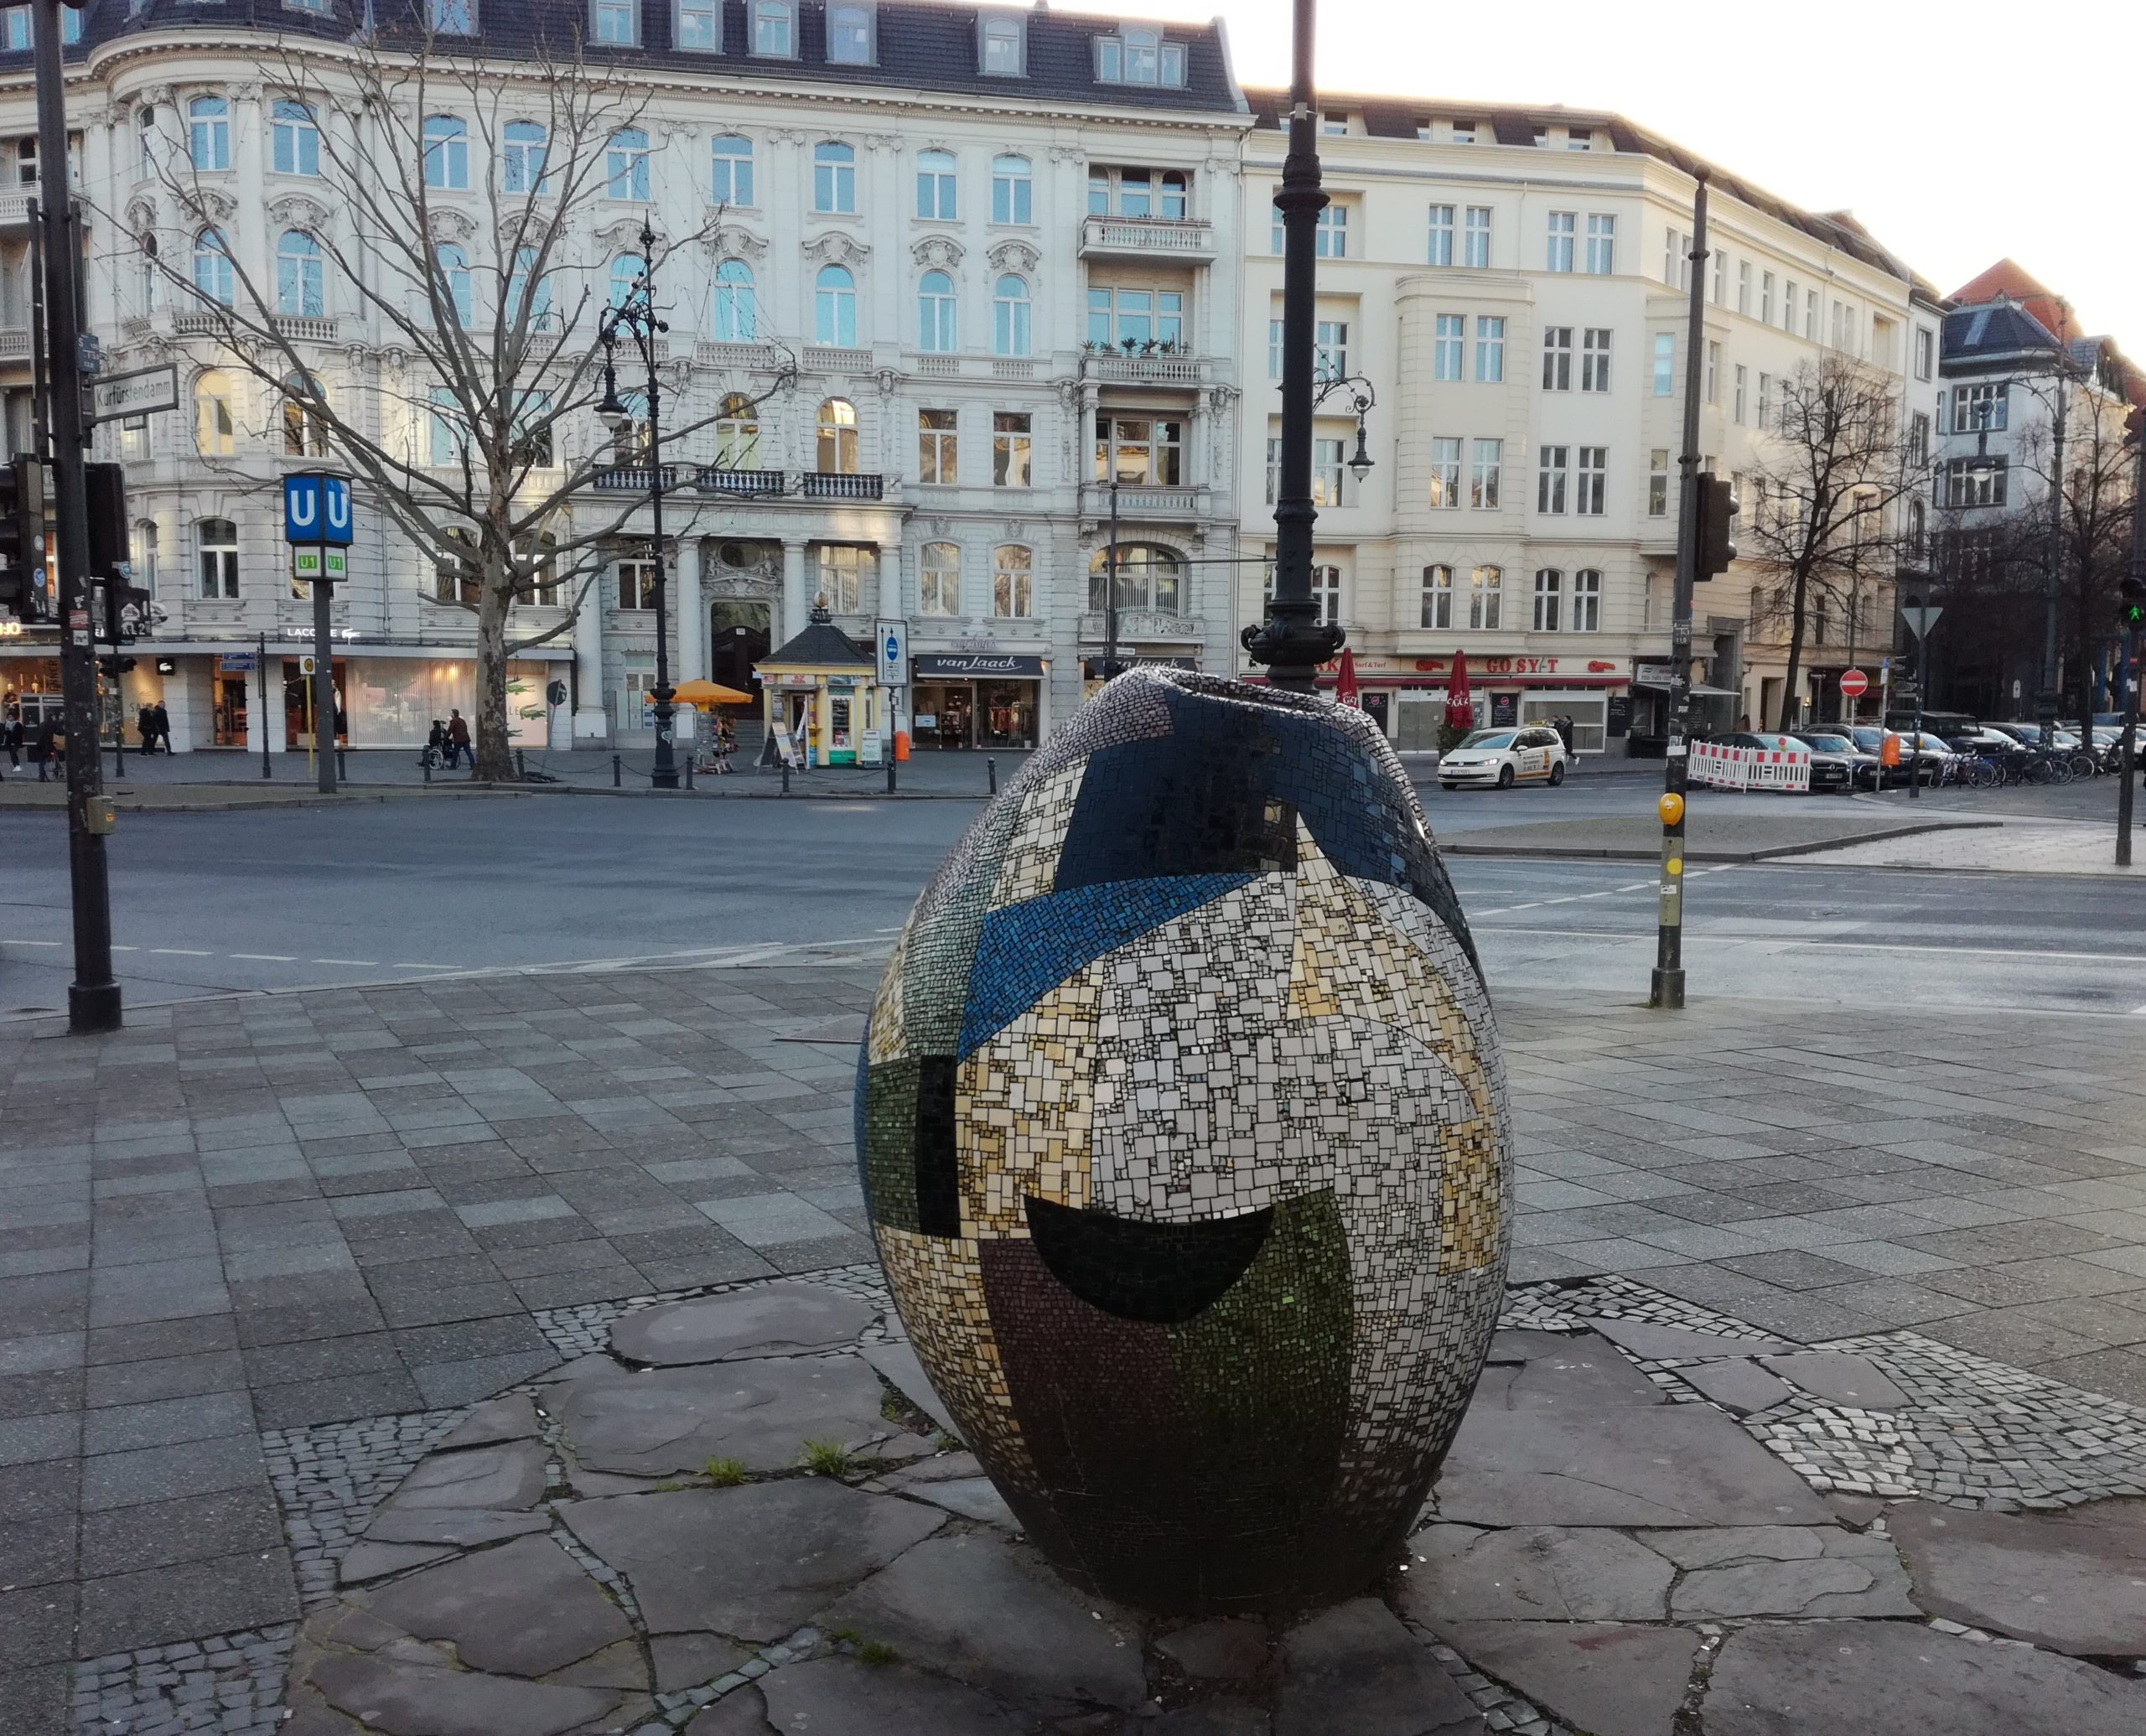 Oeuvre d'art en forme d'oeuf pailleté à Berlin